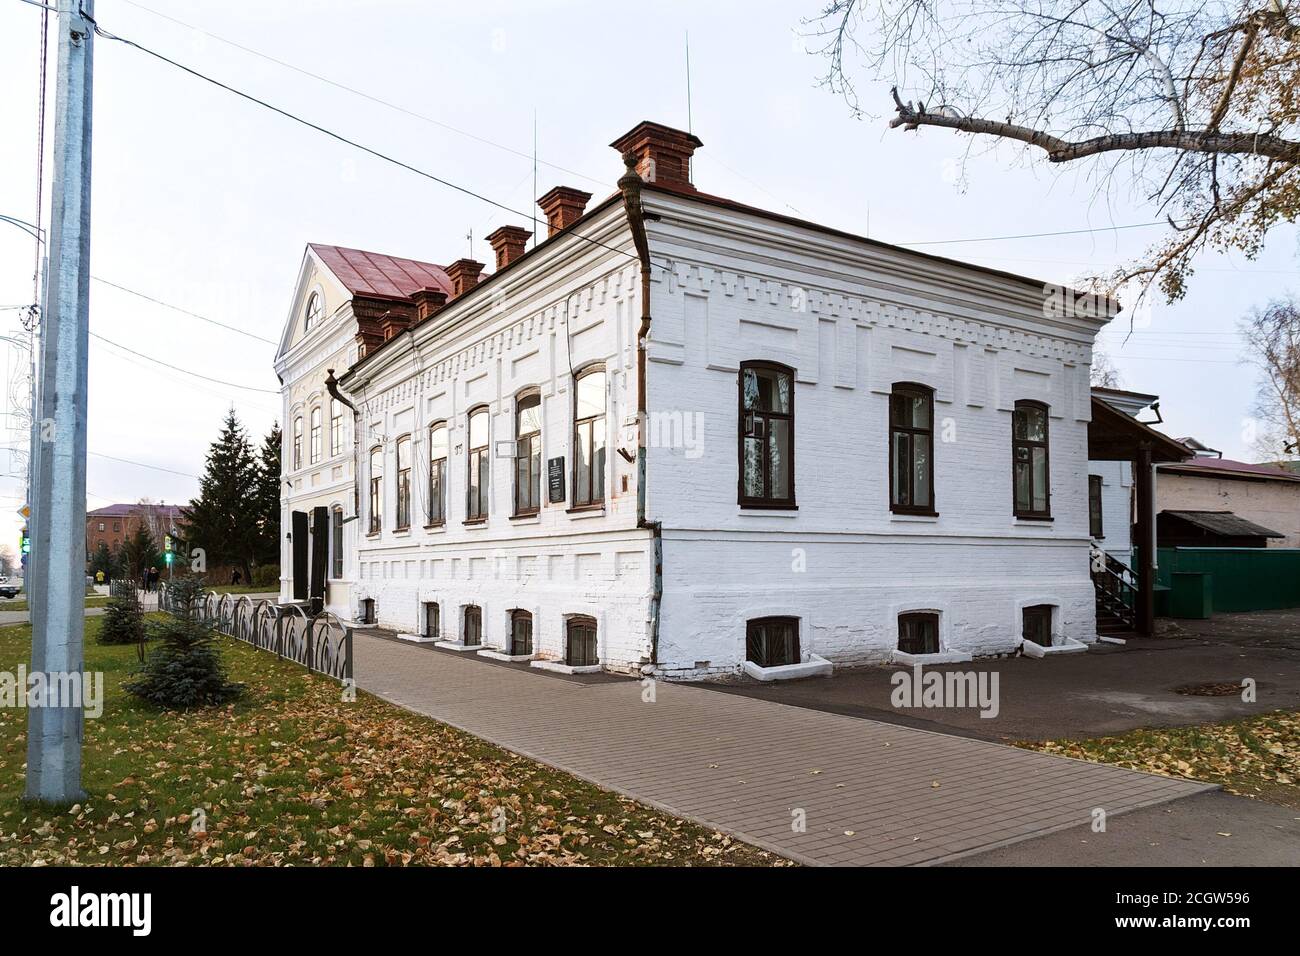 El edificio residencial monumento arquitectónico de Makarov construido en el siglo 19 se encuentra en el centro histórico de la ciudad. Foto de stock